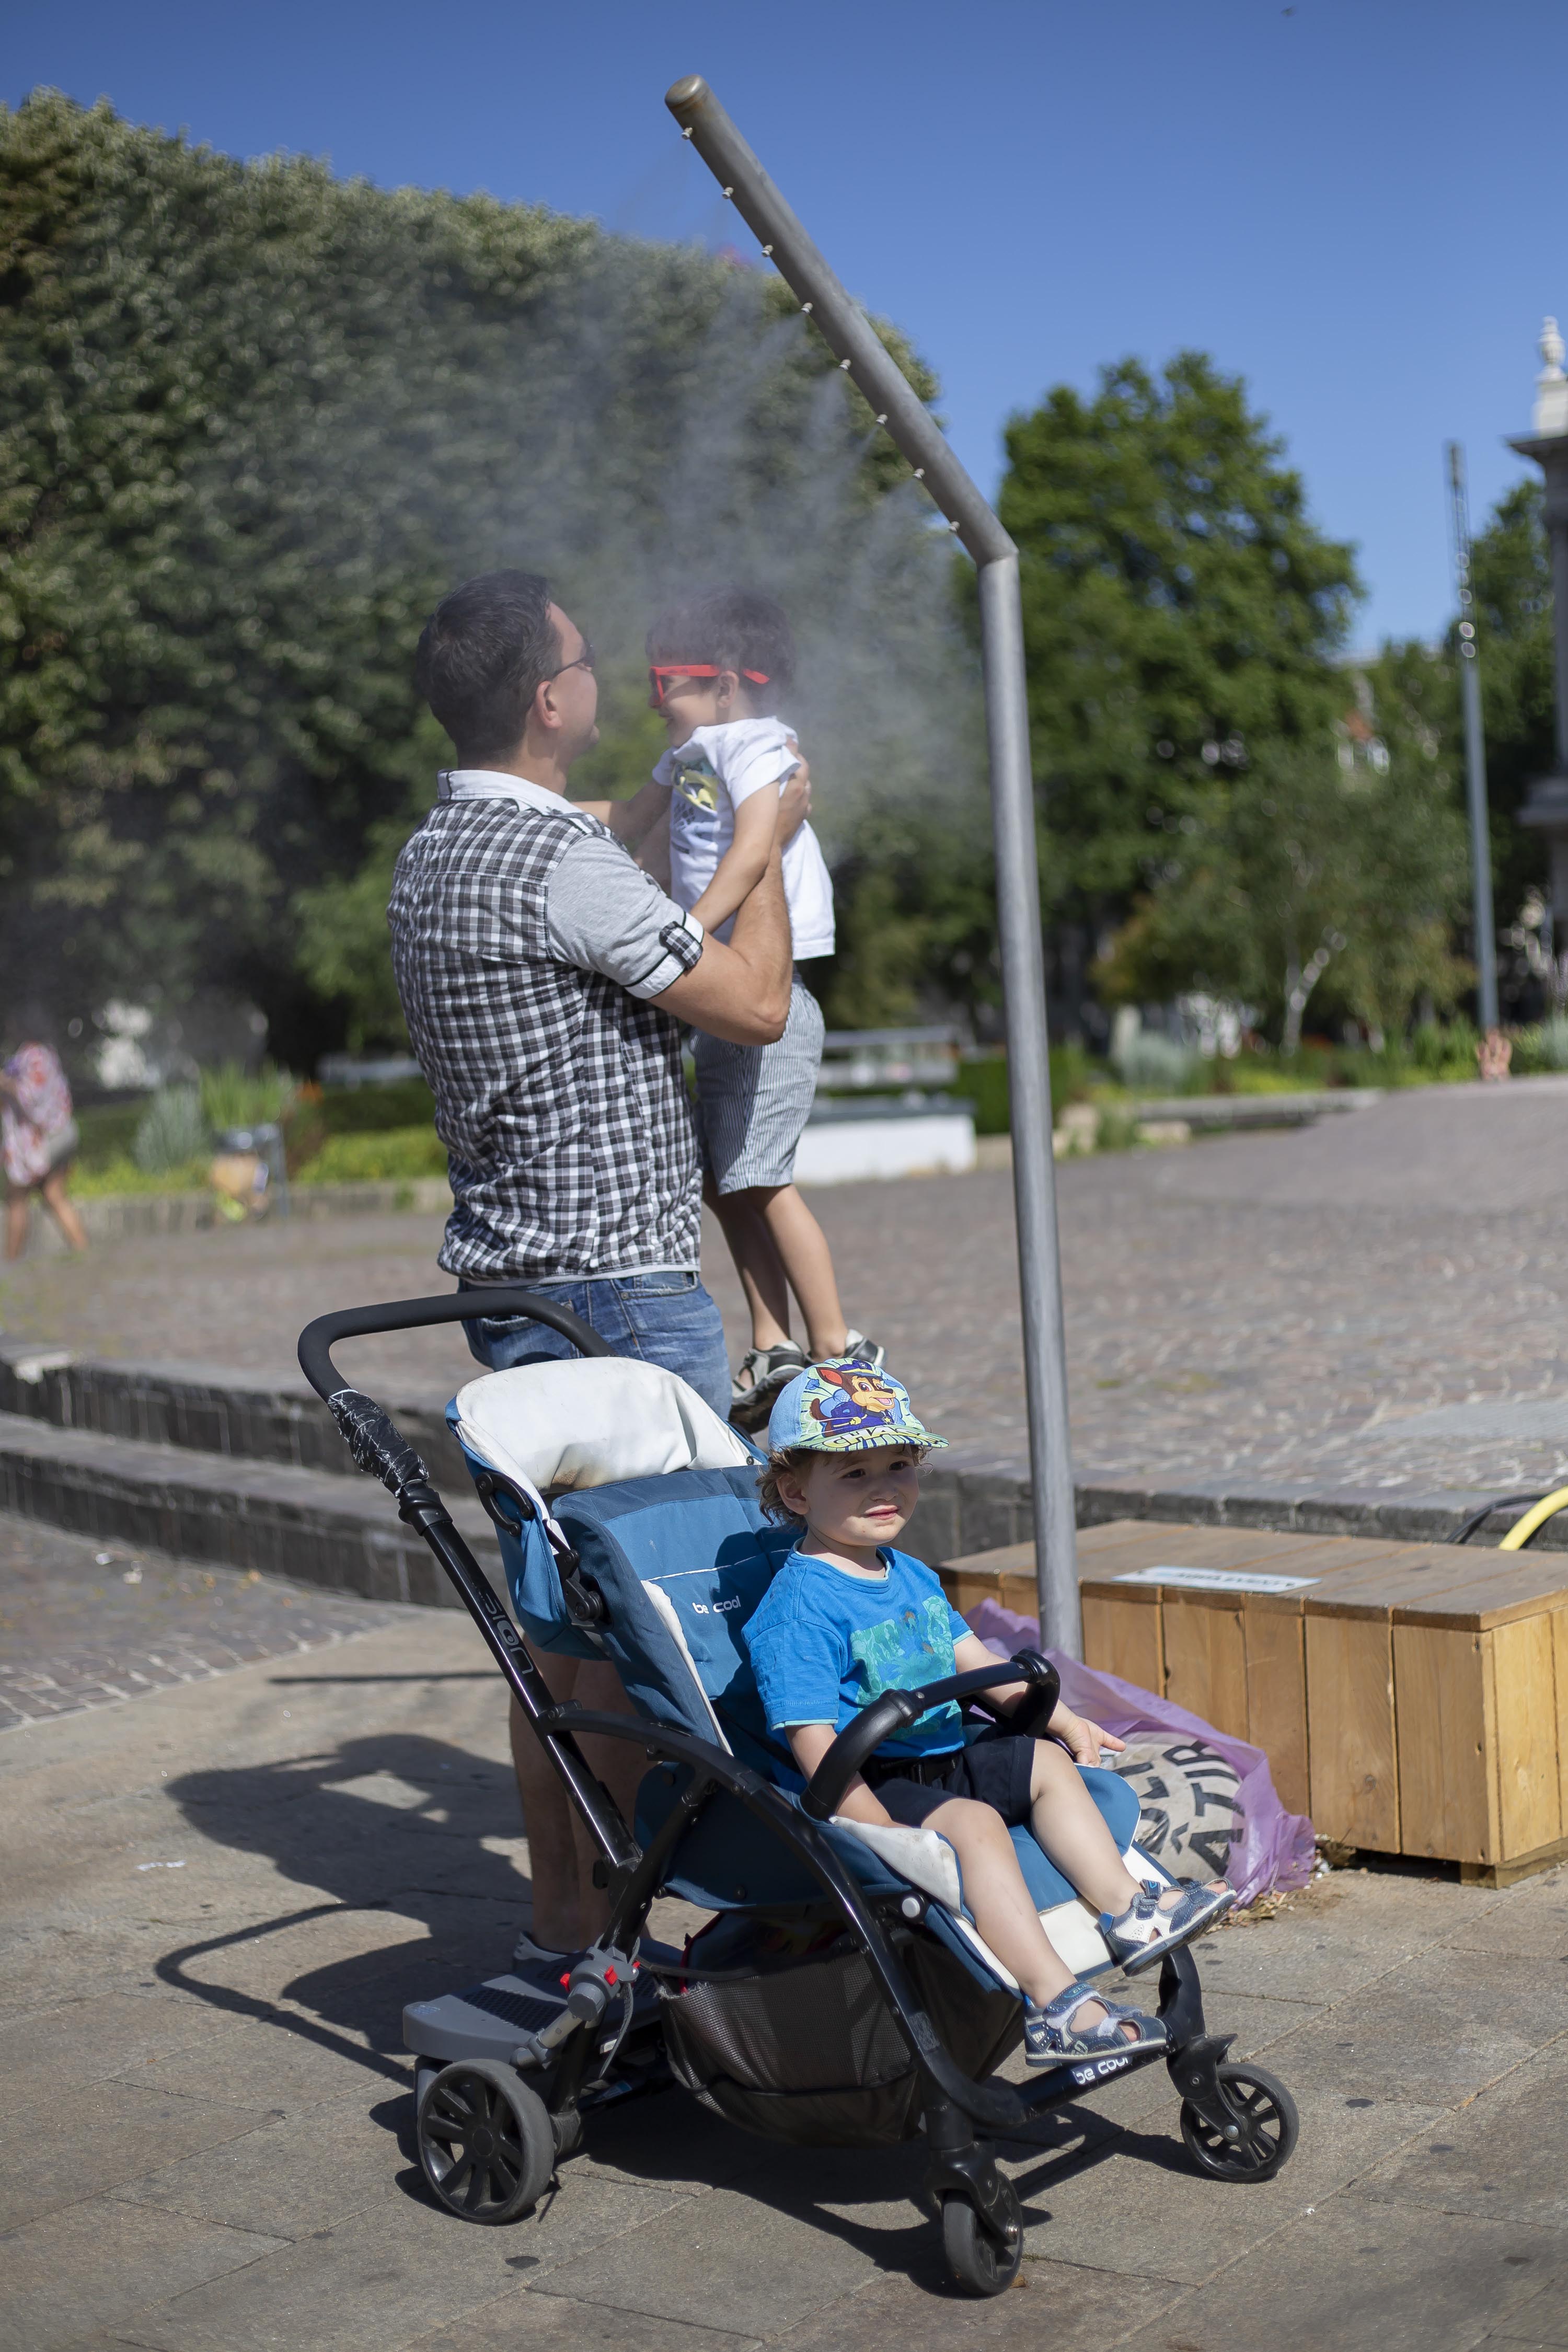 6月28日,在法国东部城市斯特拉斯堡,一个小女孩在喷泉旁戏水消暑.